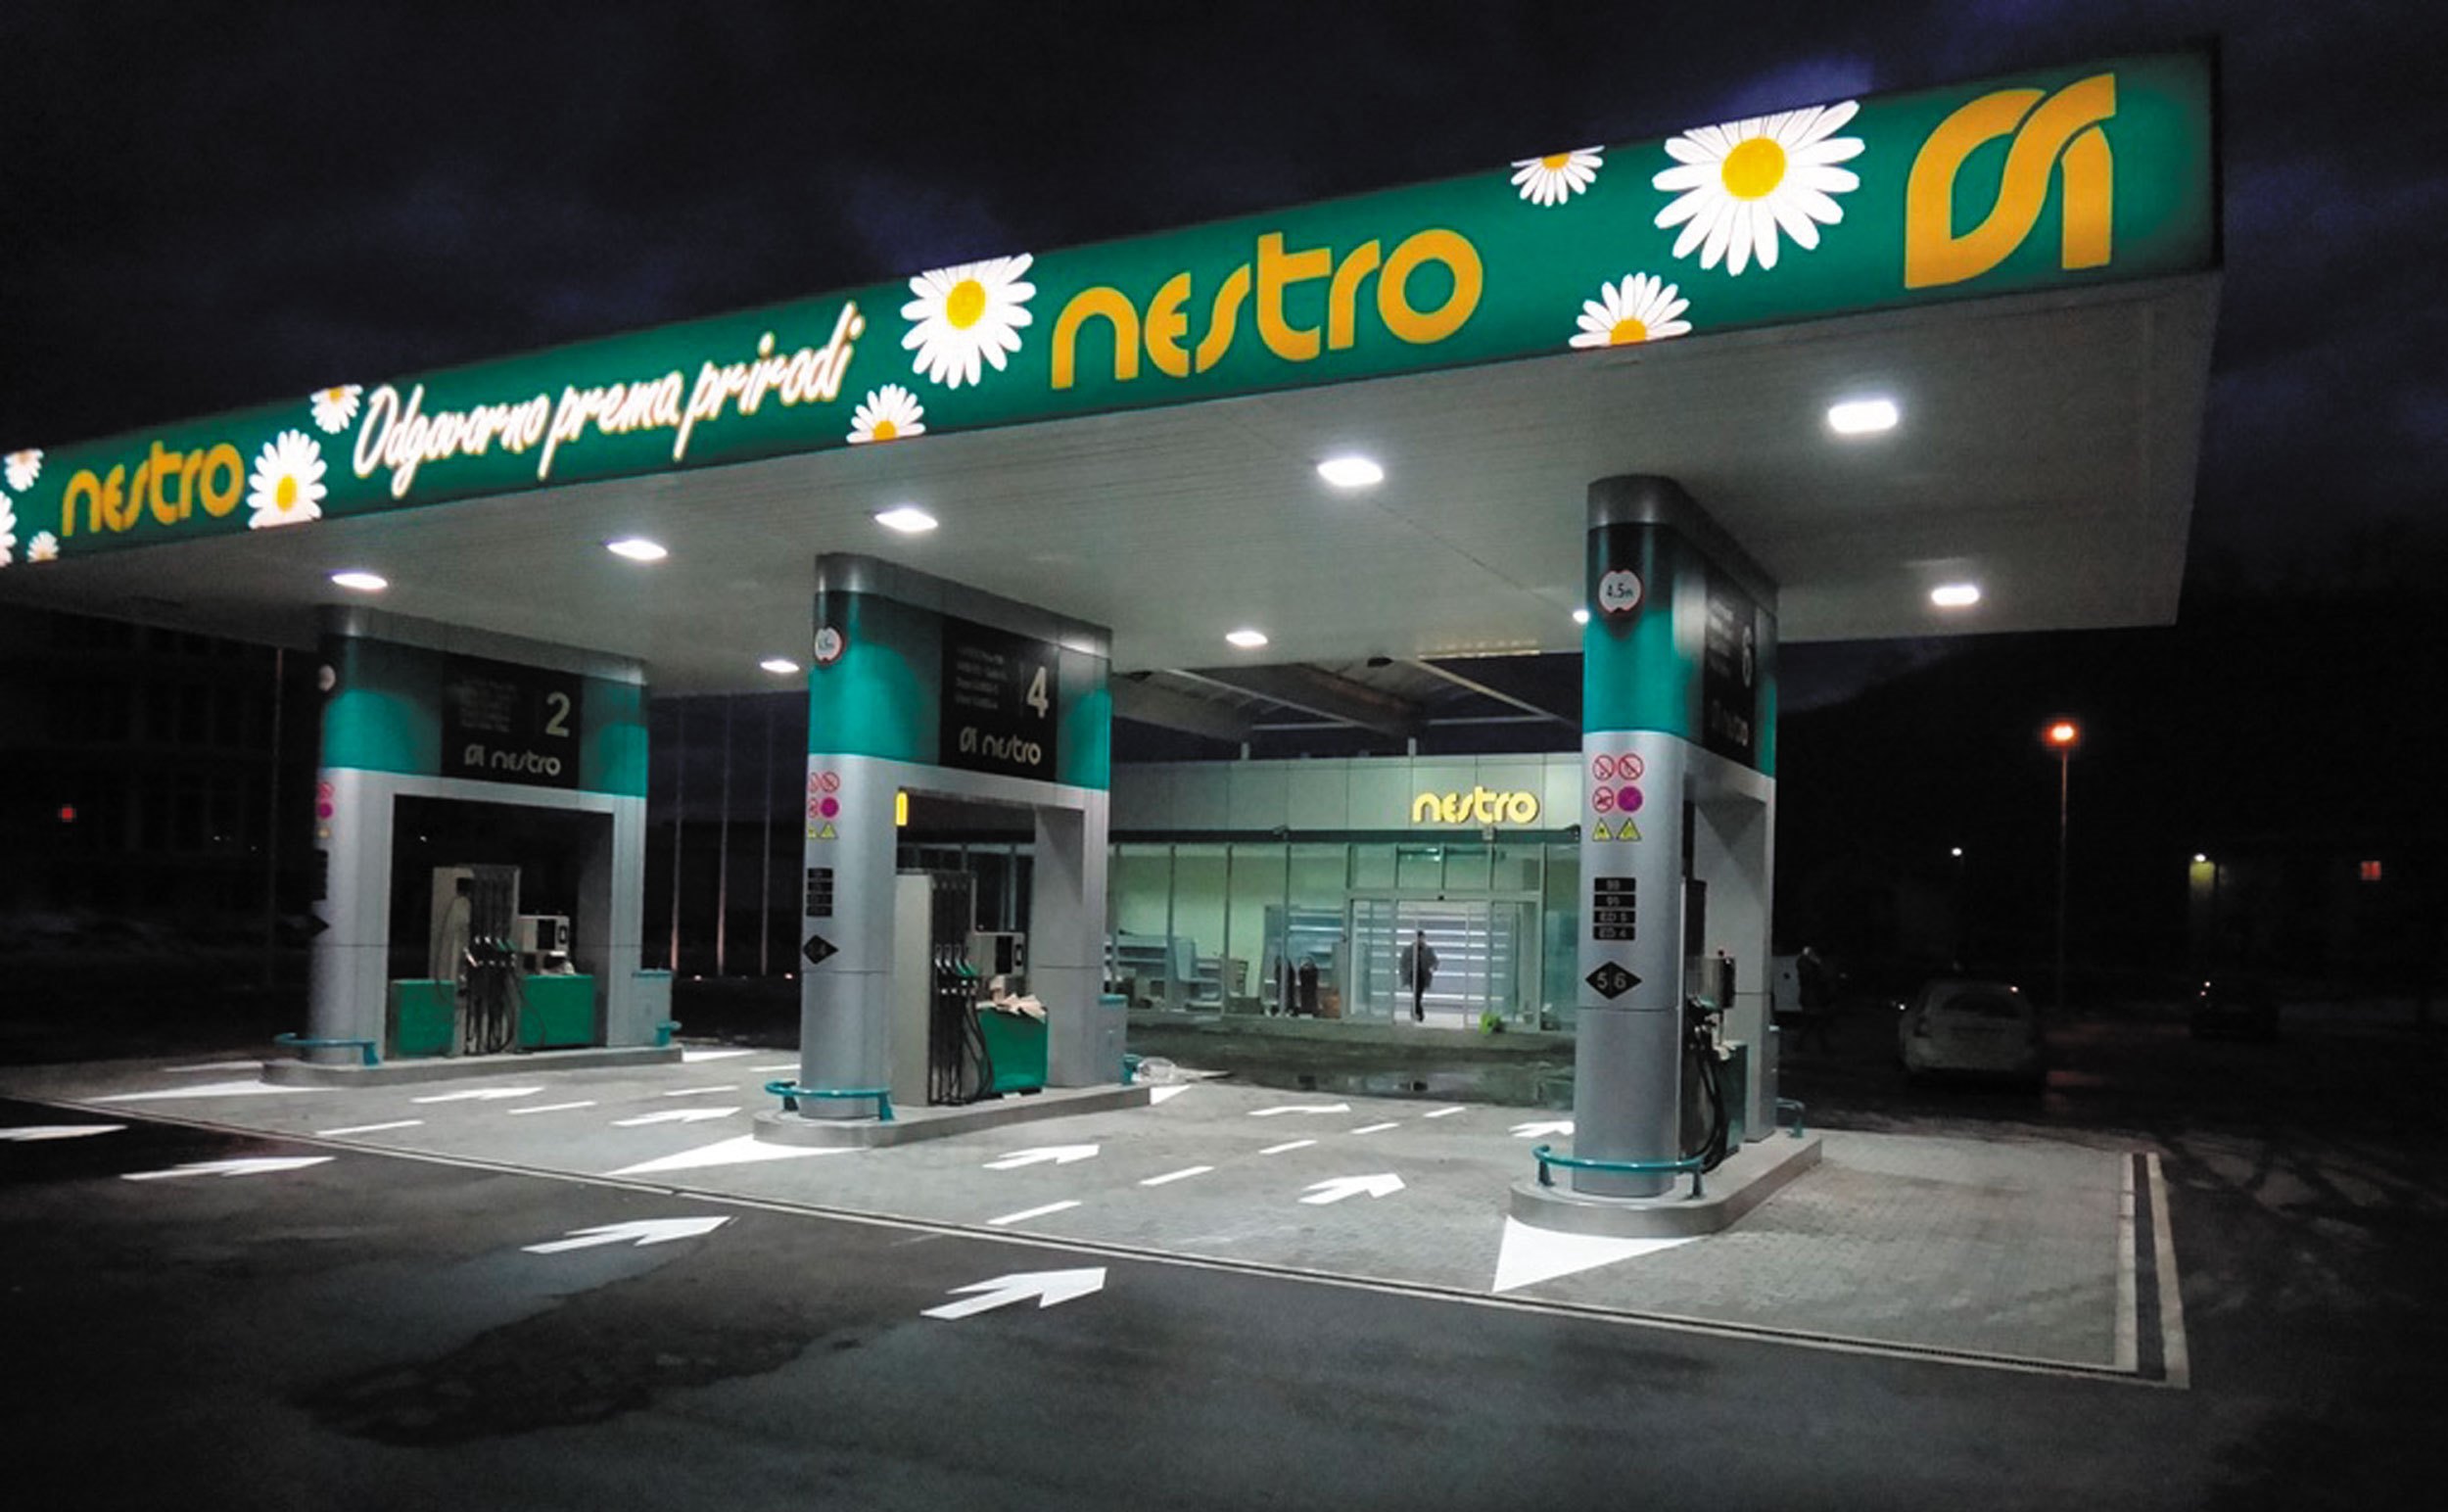 Nestro petrol ostvario neto dobit od 3,6 mil KM u 2017.